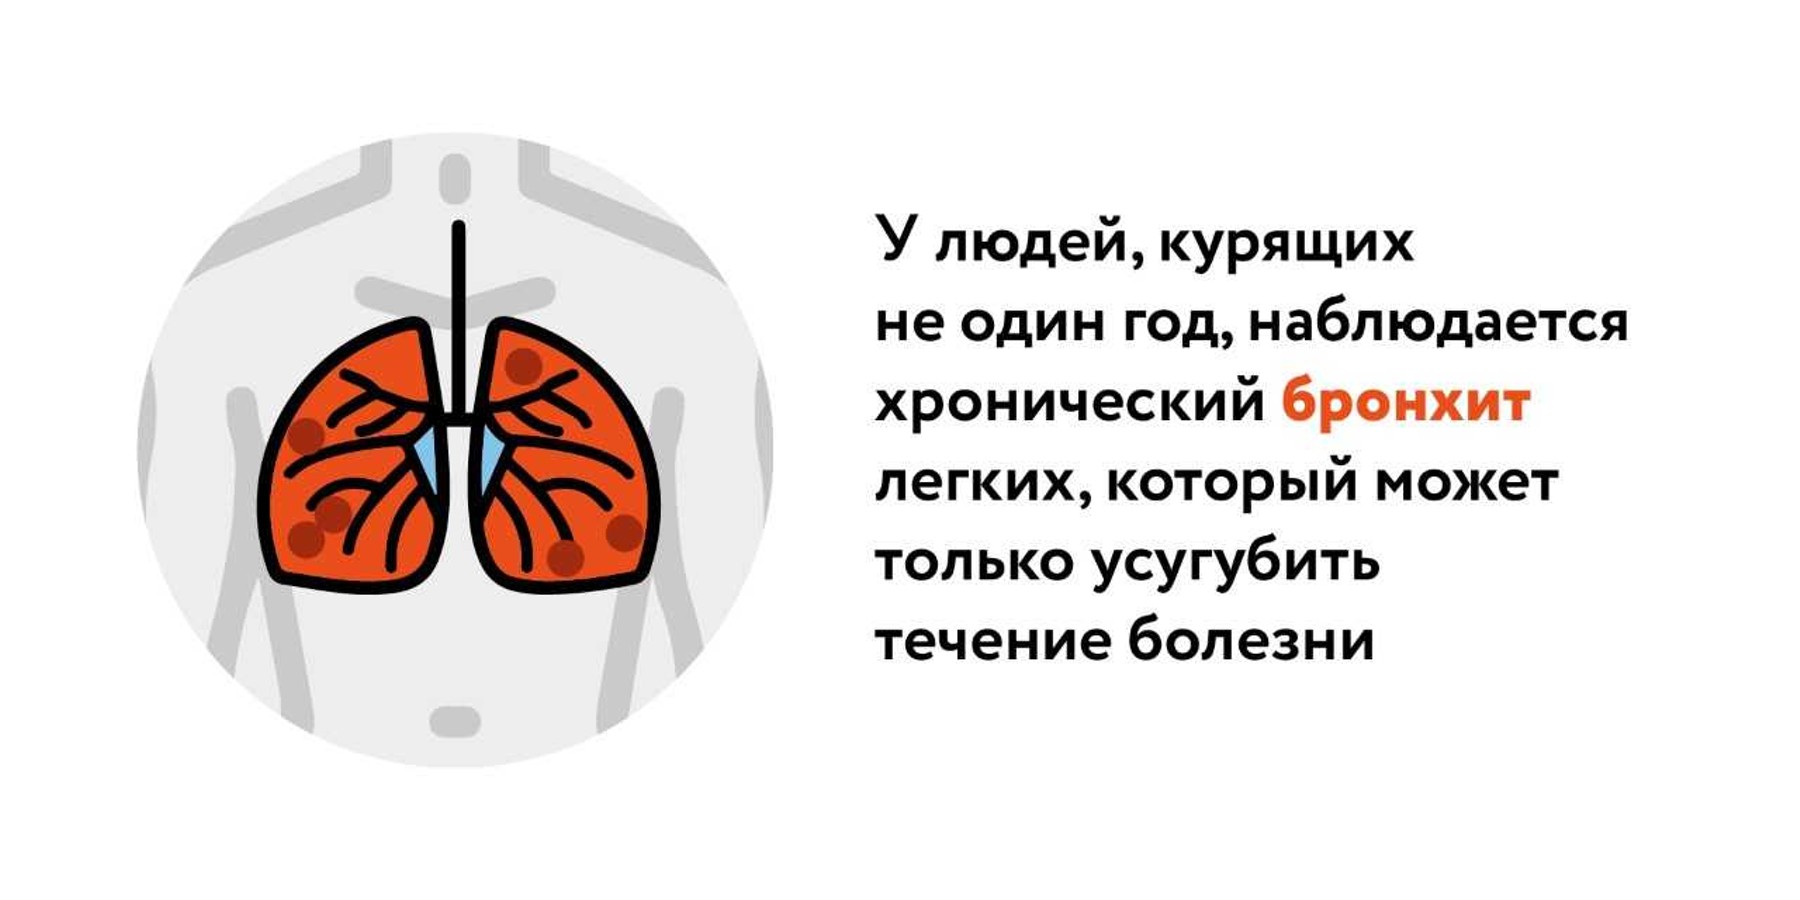 Эксперты оценили роль никотина в борьбе с COVID-19 – Москва 24, 23.04.2020